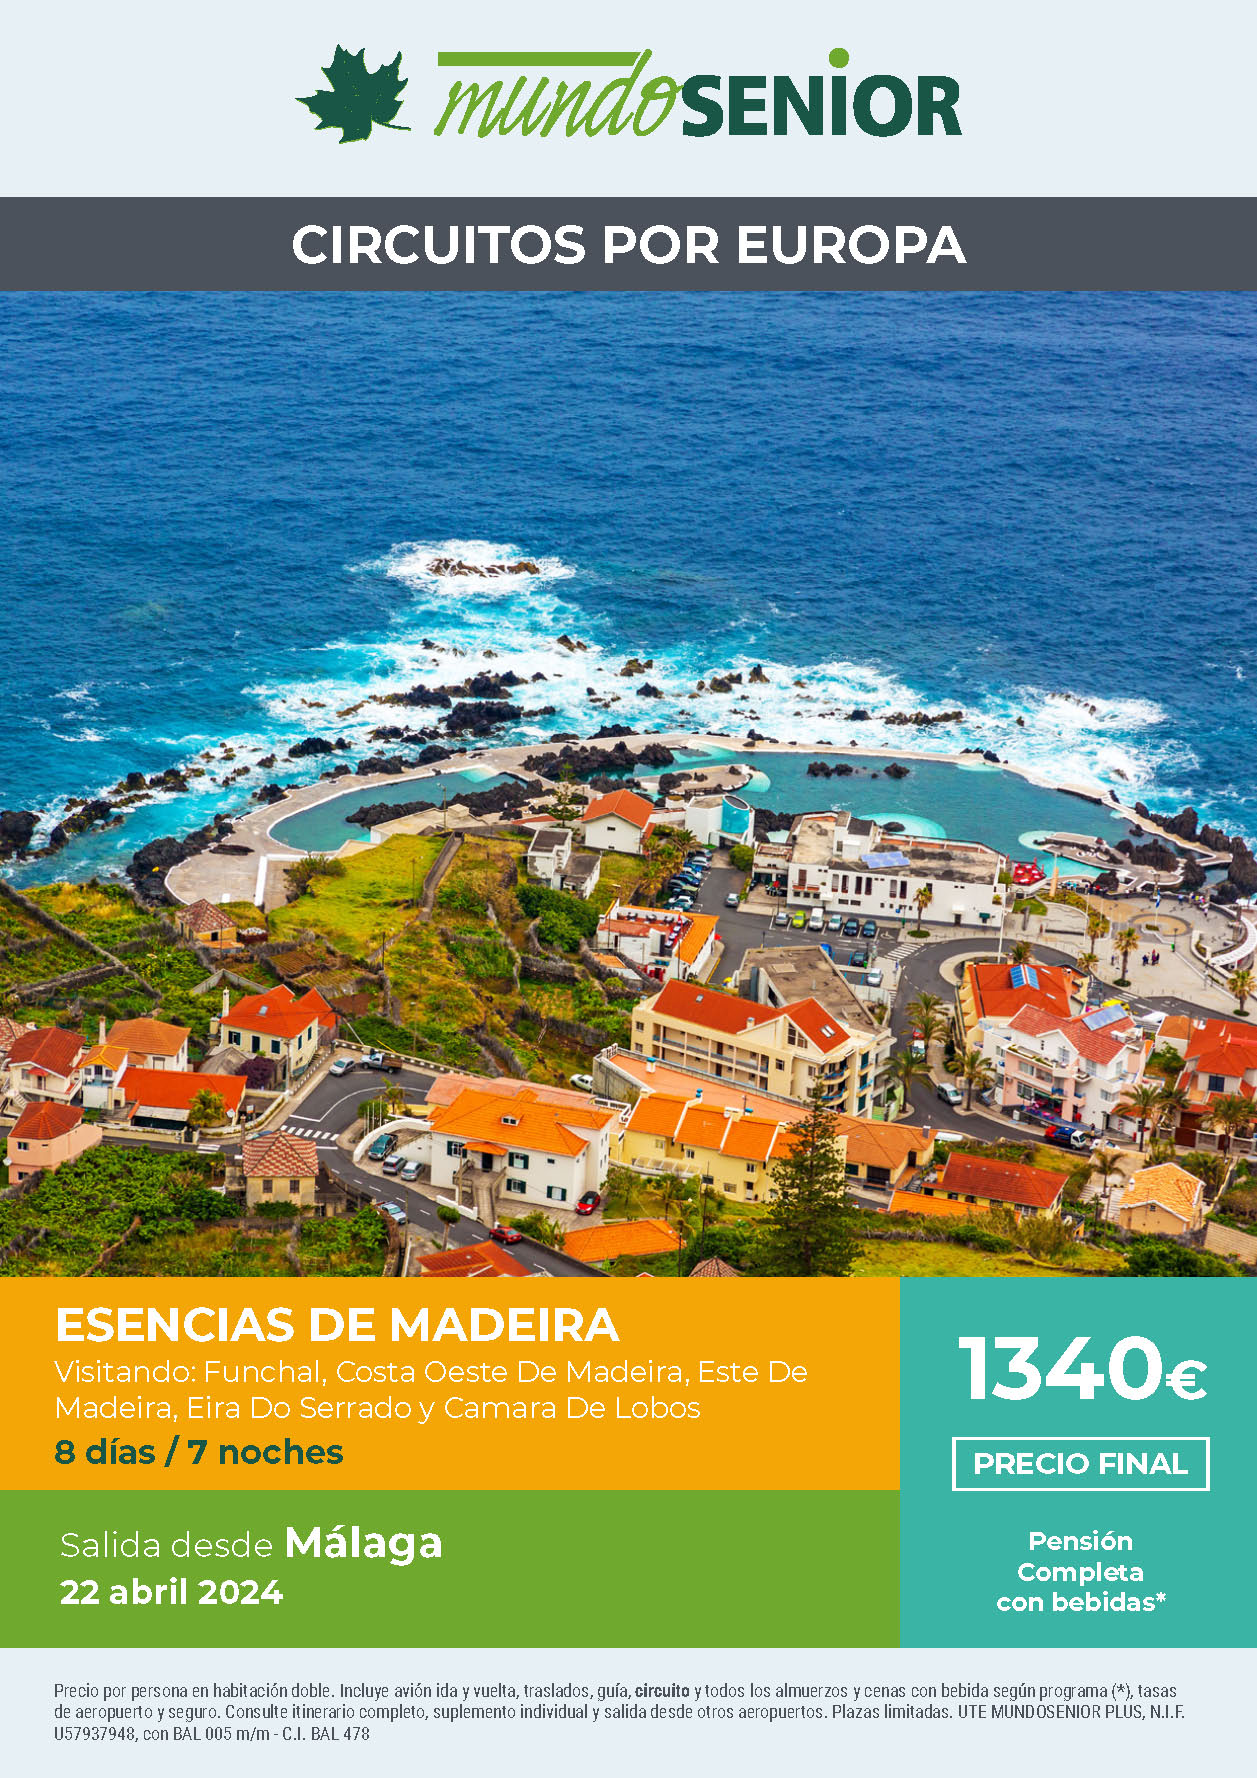 Oferta Mundo Senior circuito Esencias de Madeira Pension Completa 8 dias salida 22 abril 2024 en vuelo directo desde Malaga